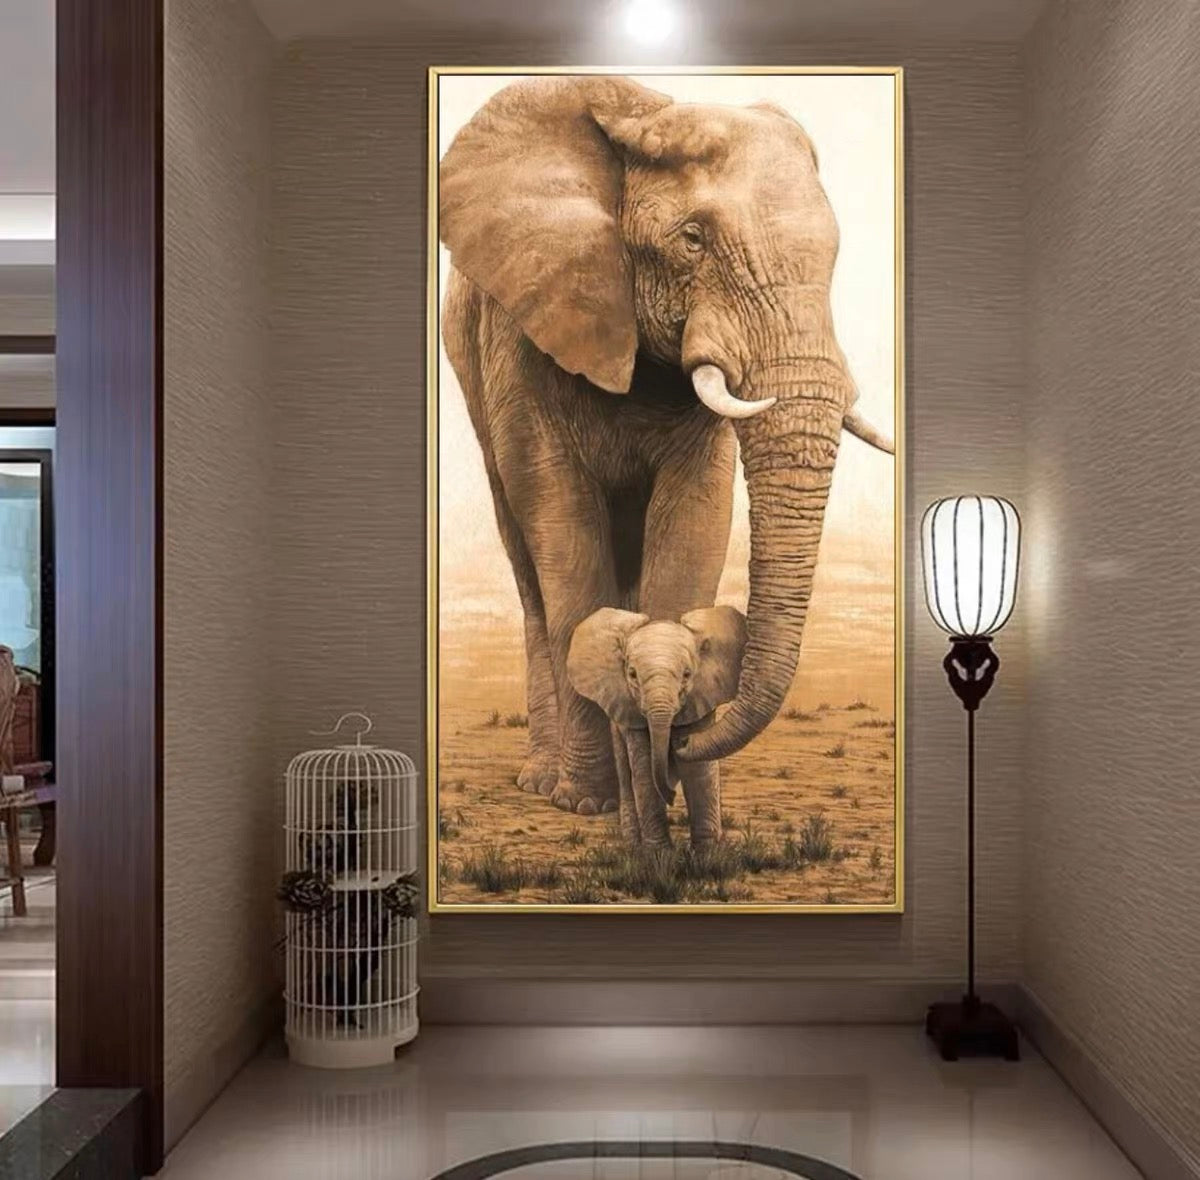 Animal elephant decorative painting.